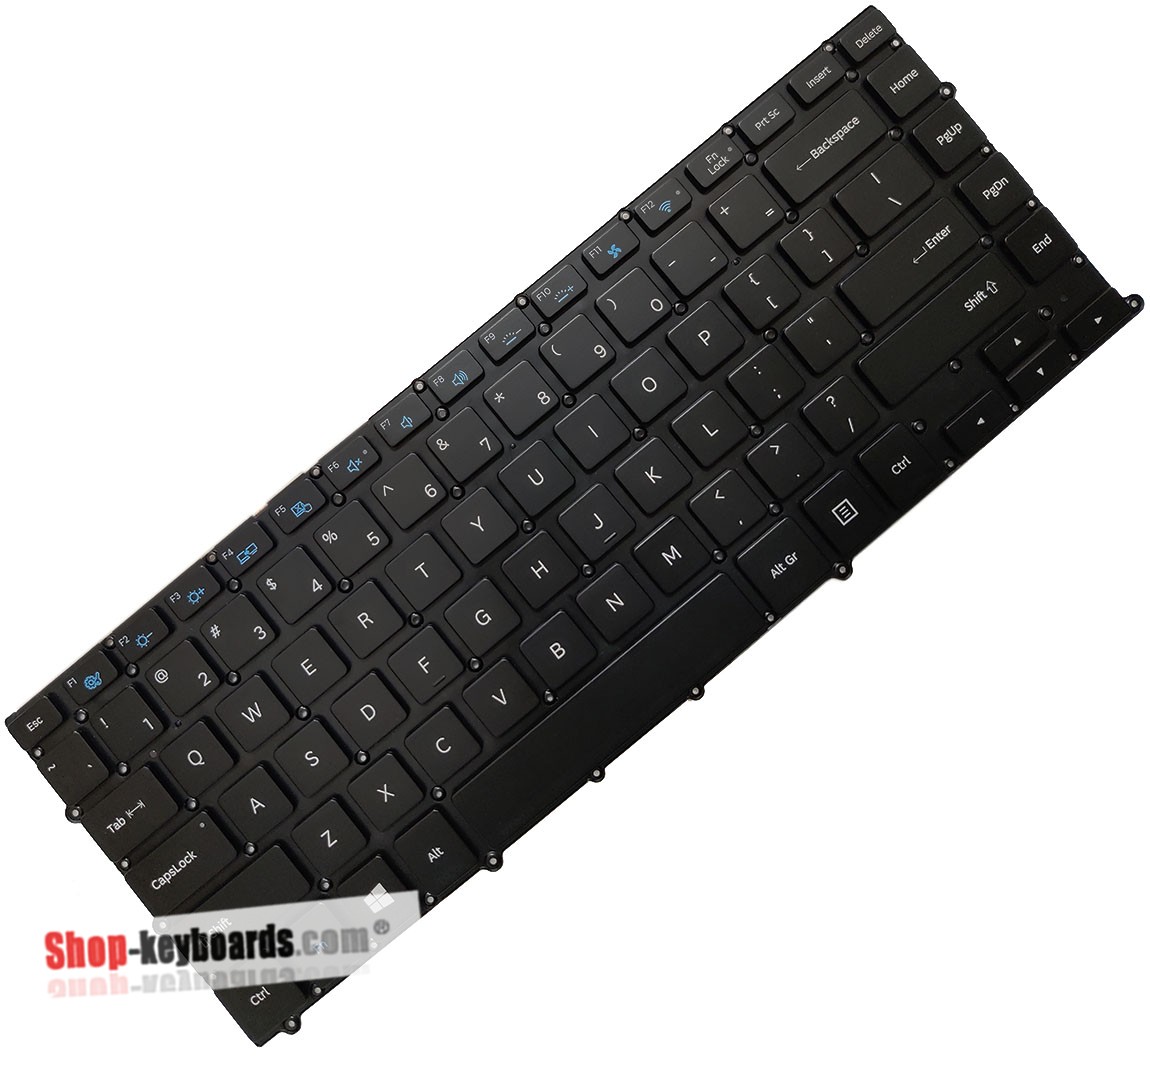 Samsung NT900X4D-K01DE  Keyboard replacement